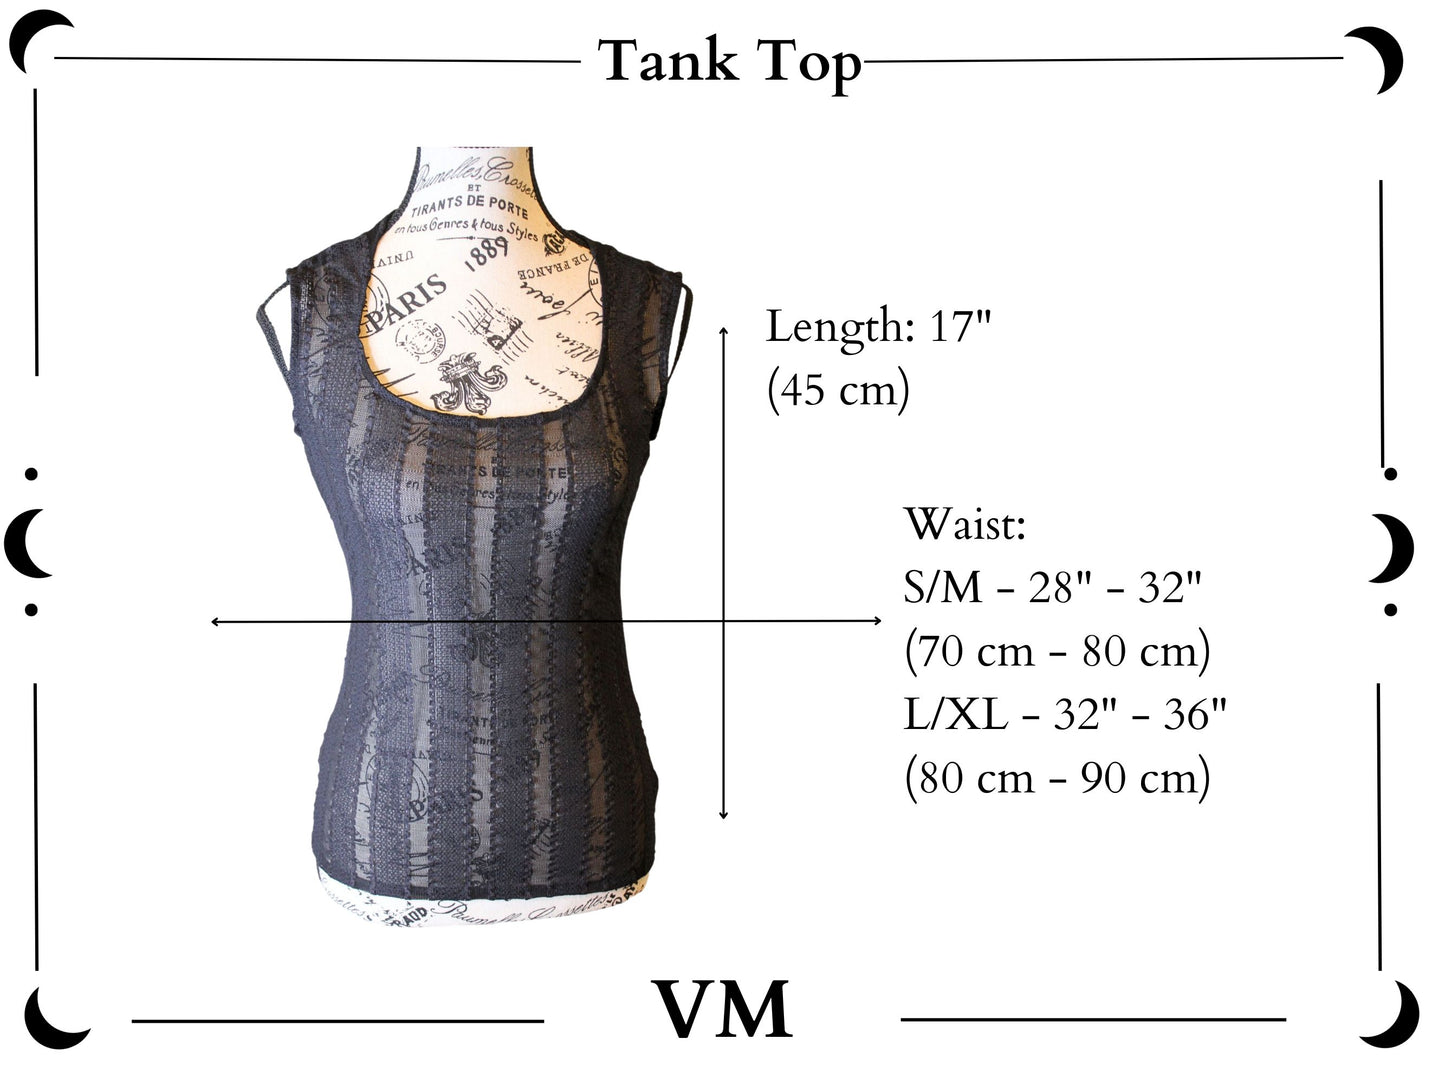 The VM Velvet Tank